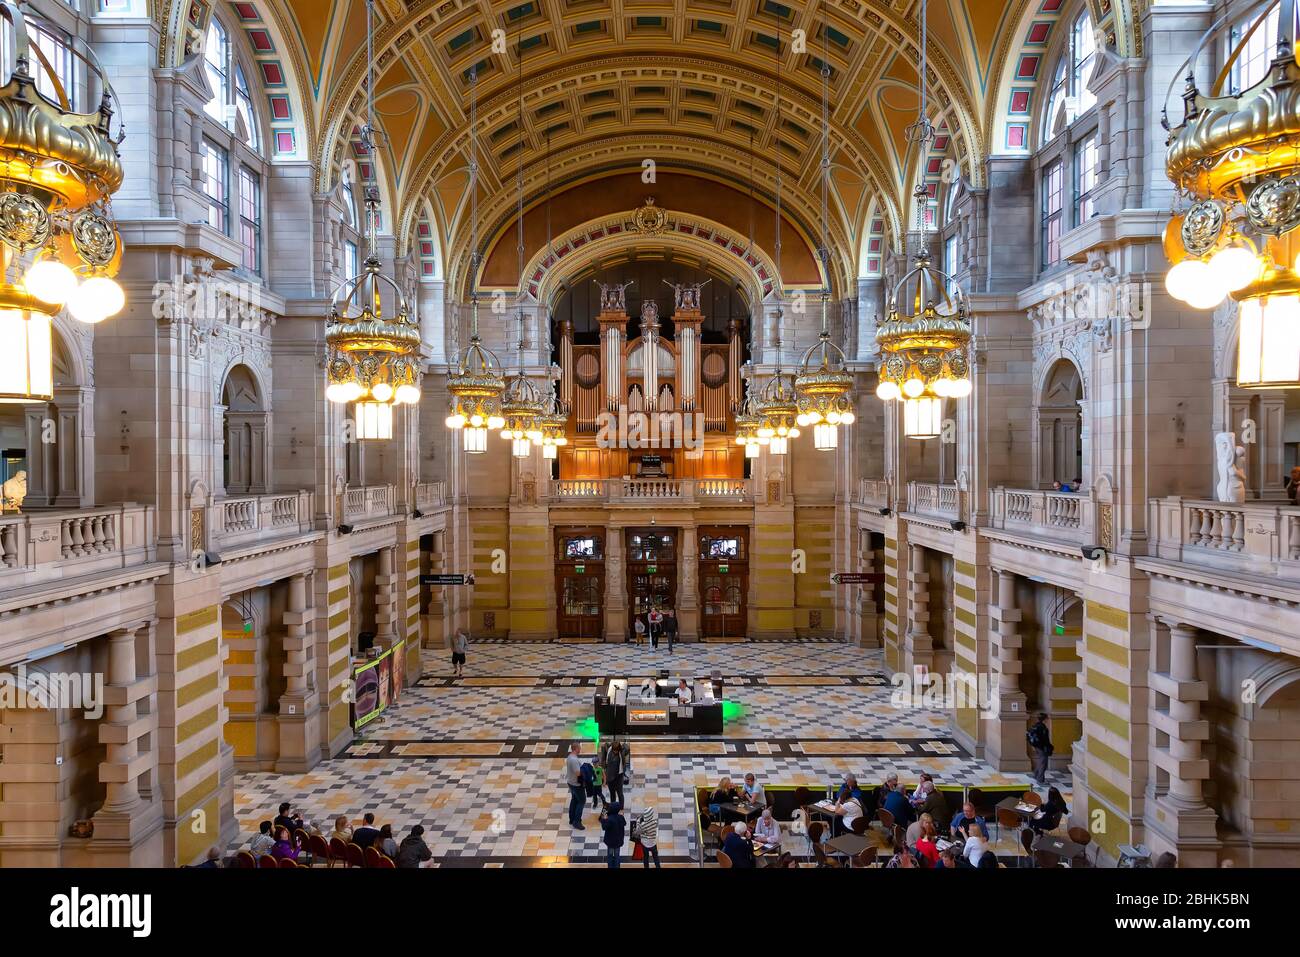 Glasgow, Royaume-Uni - 21 août 2014 : vue sur la salle principale de la galerie d'art et du musée Kelvingrove Banque D'Images